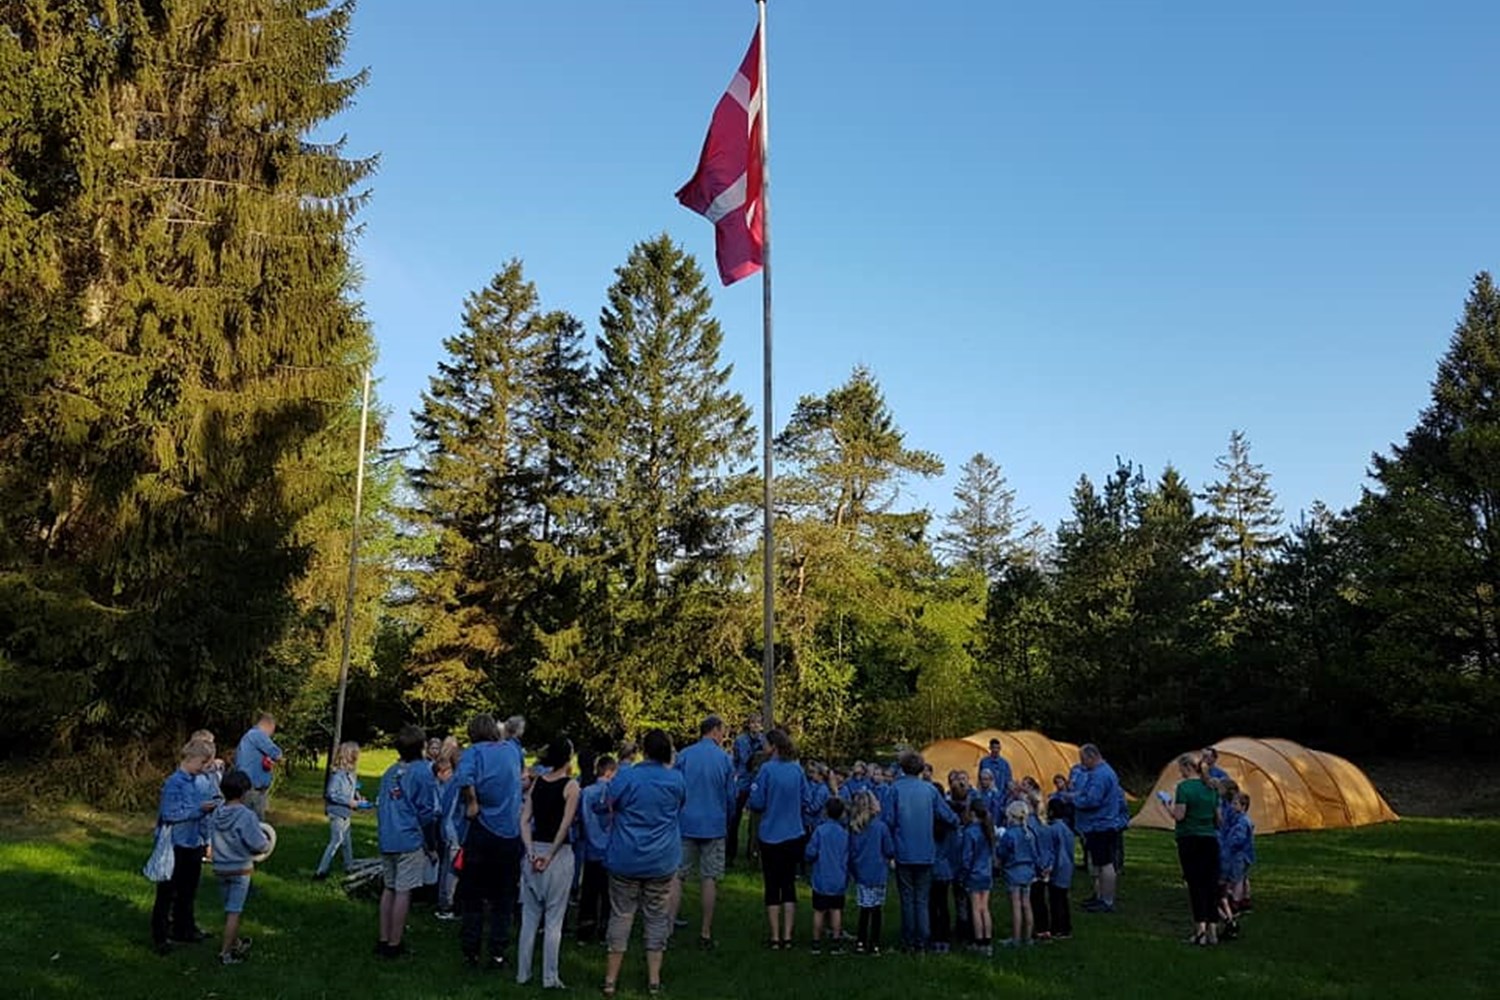 Årets sommerlejr for Puslinge, Tumlinge & Pilte fandt sted den 9. - 13. maj 2018 på Øksedallejren ved Nibe.